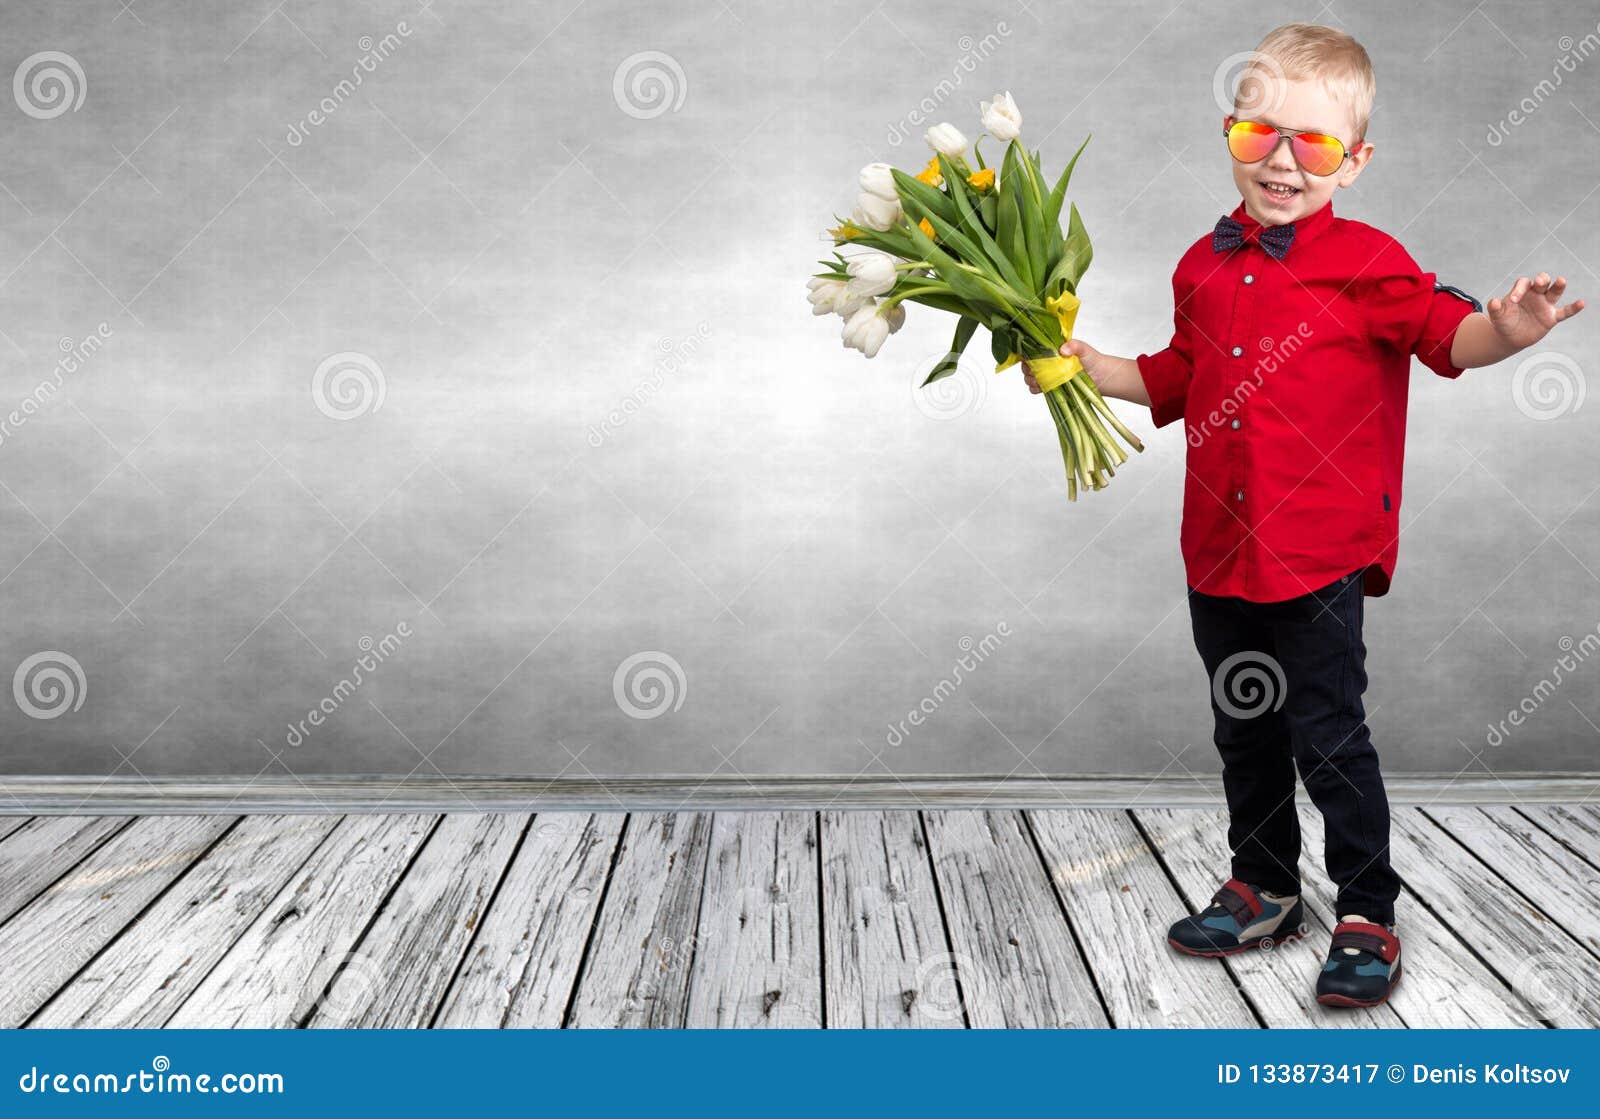 День сыновей стильные. Мальчик модный с розами. Фото вазы с цветами держит мальчик.